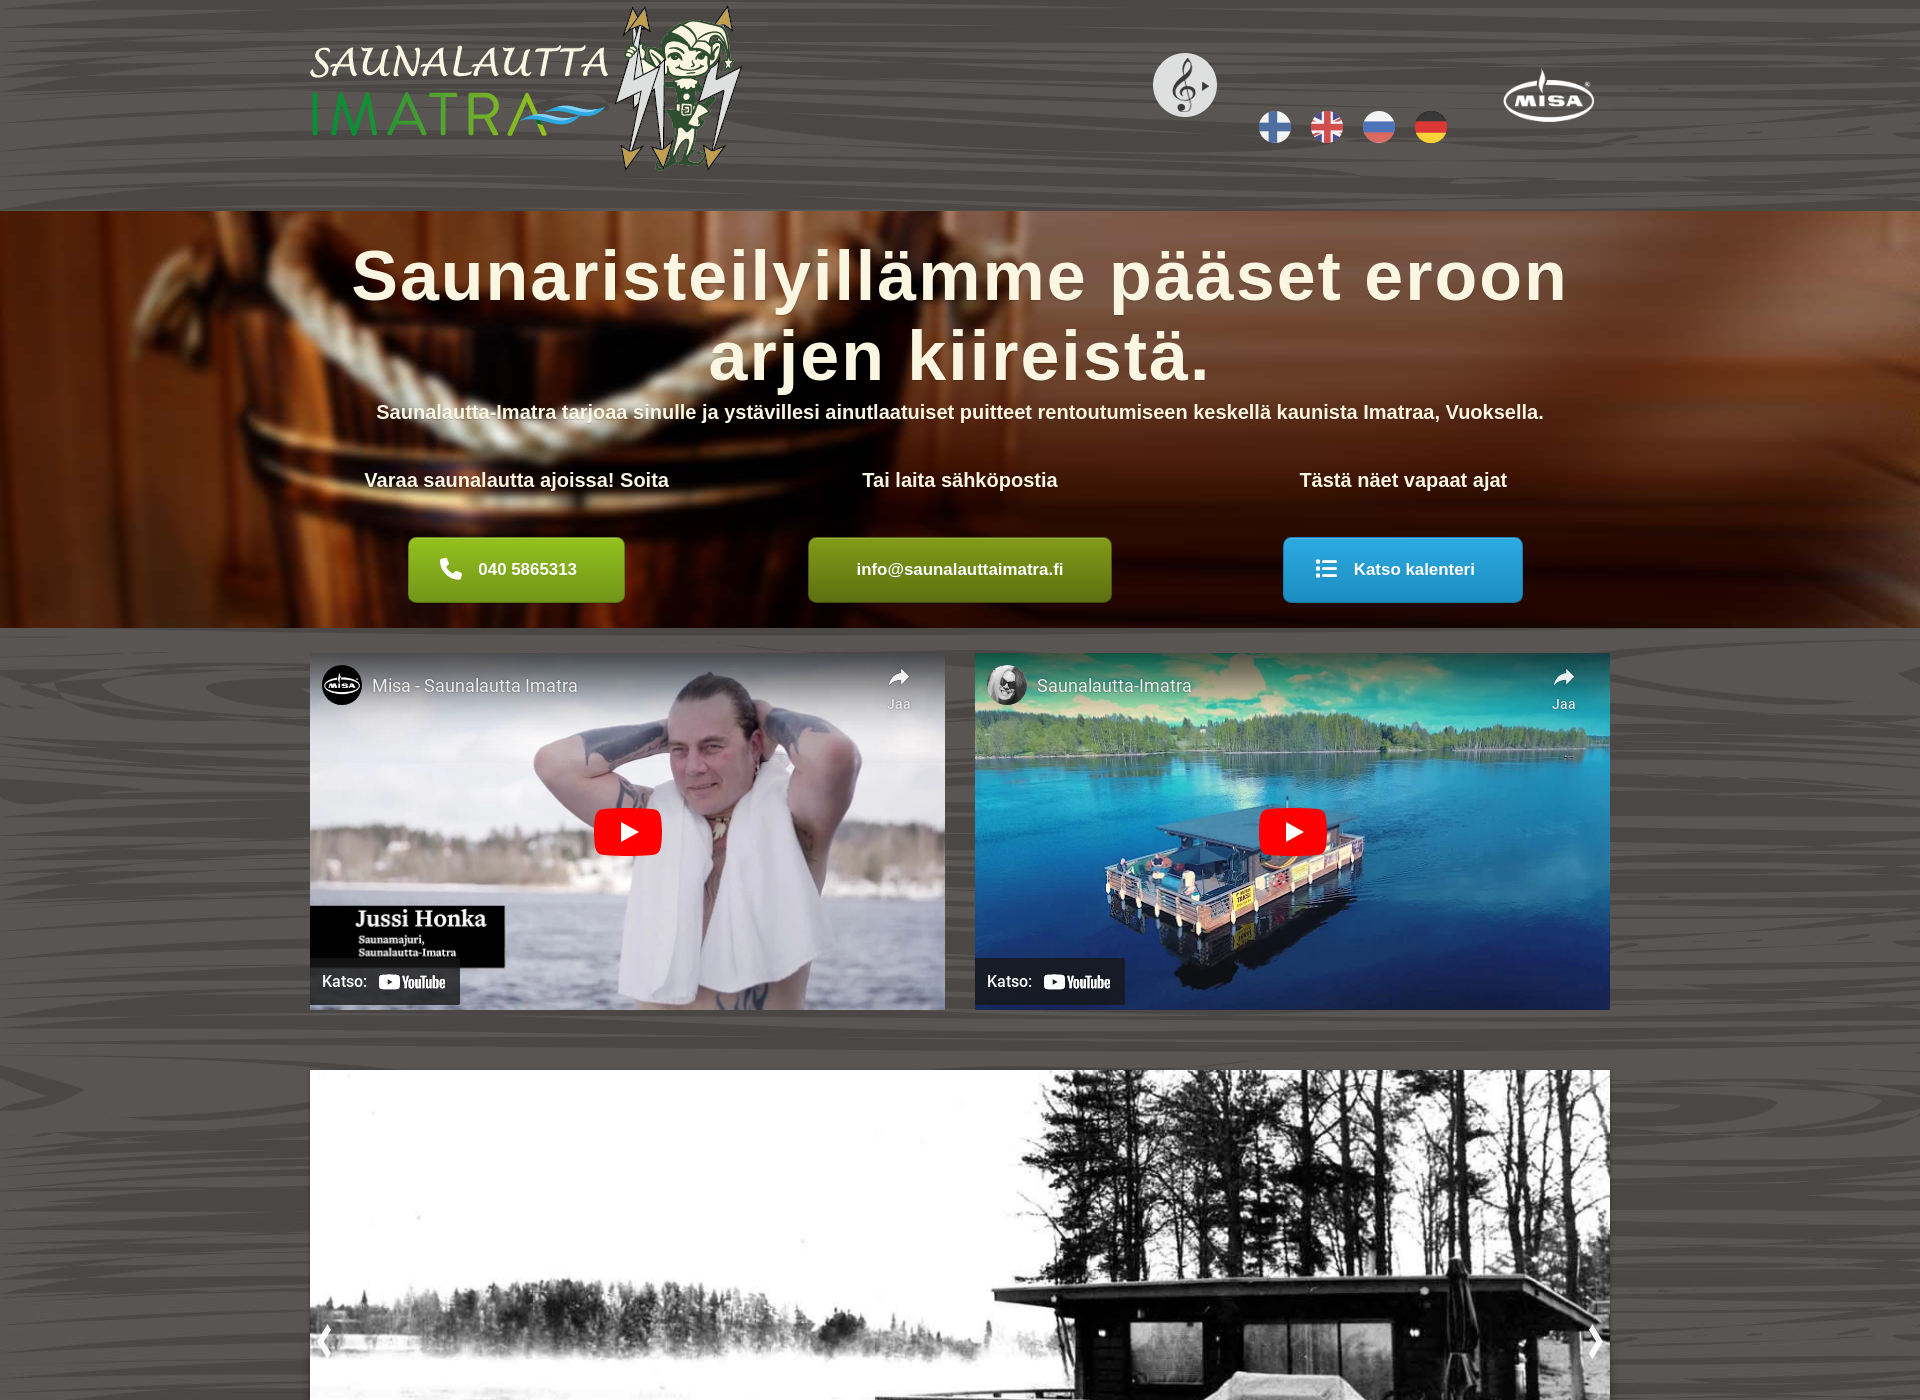 Screenshot for saunalauttaimatra.fi